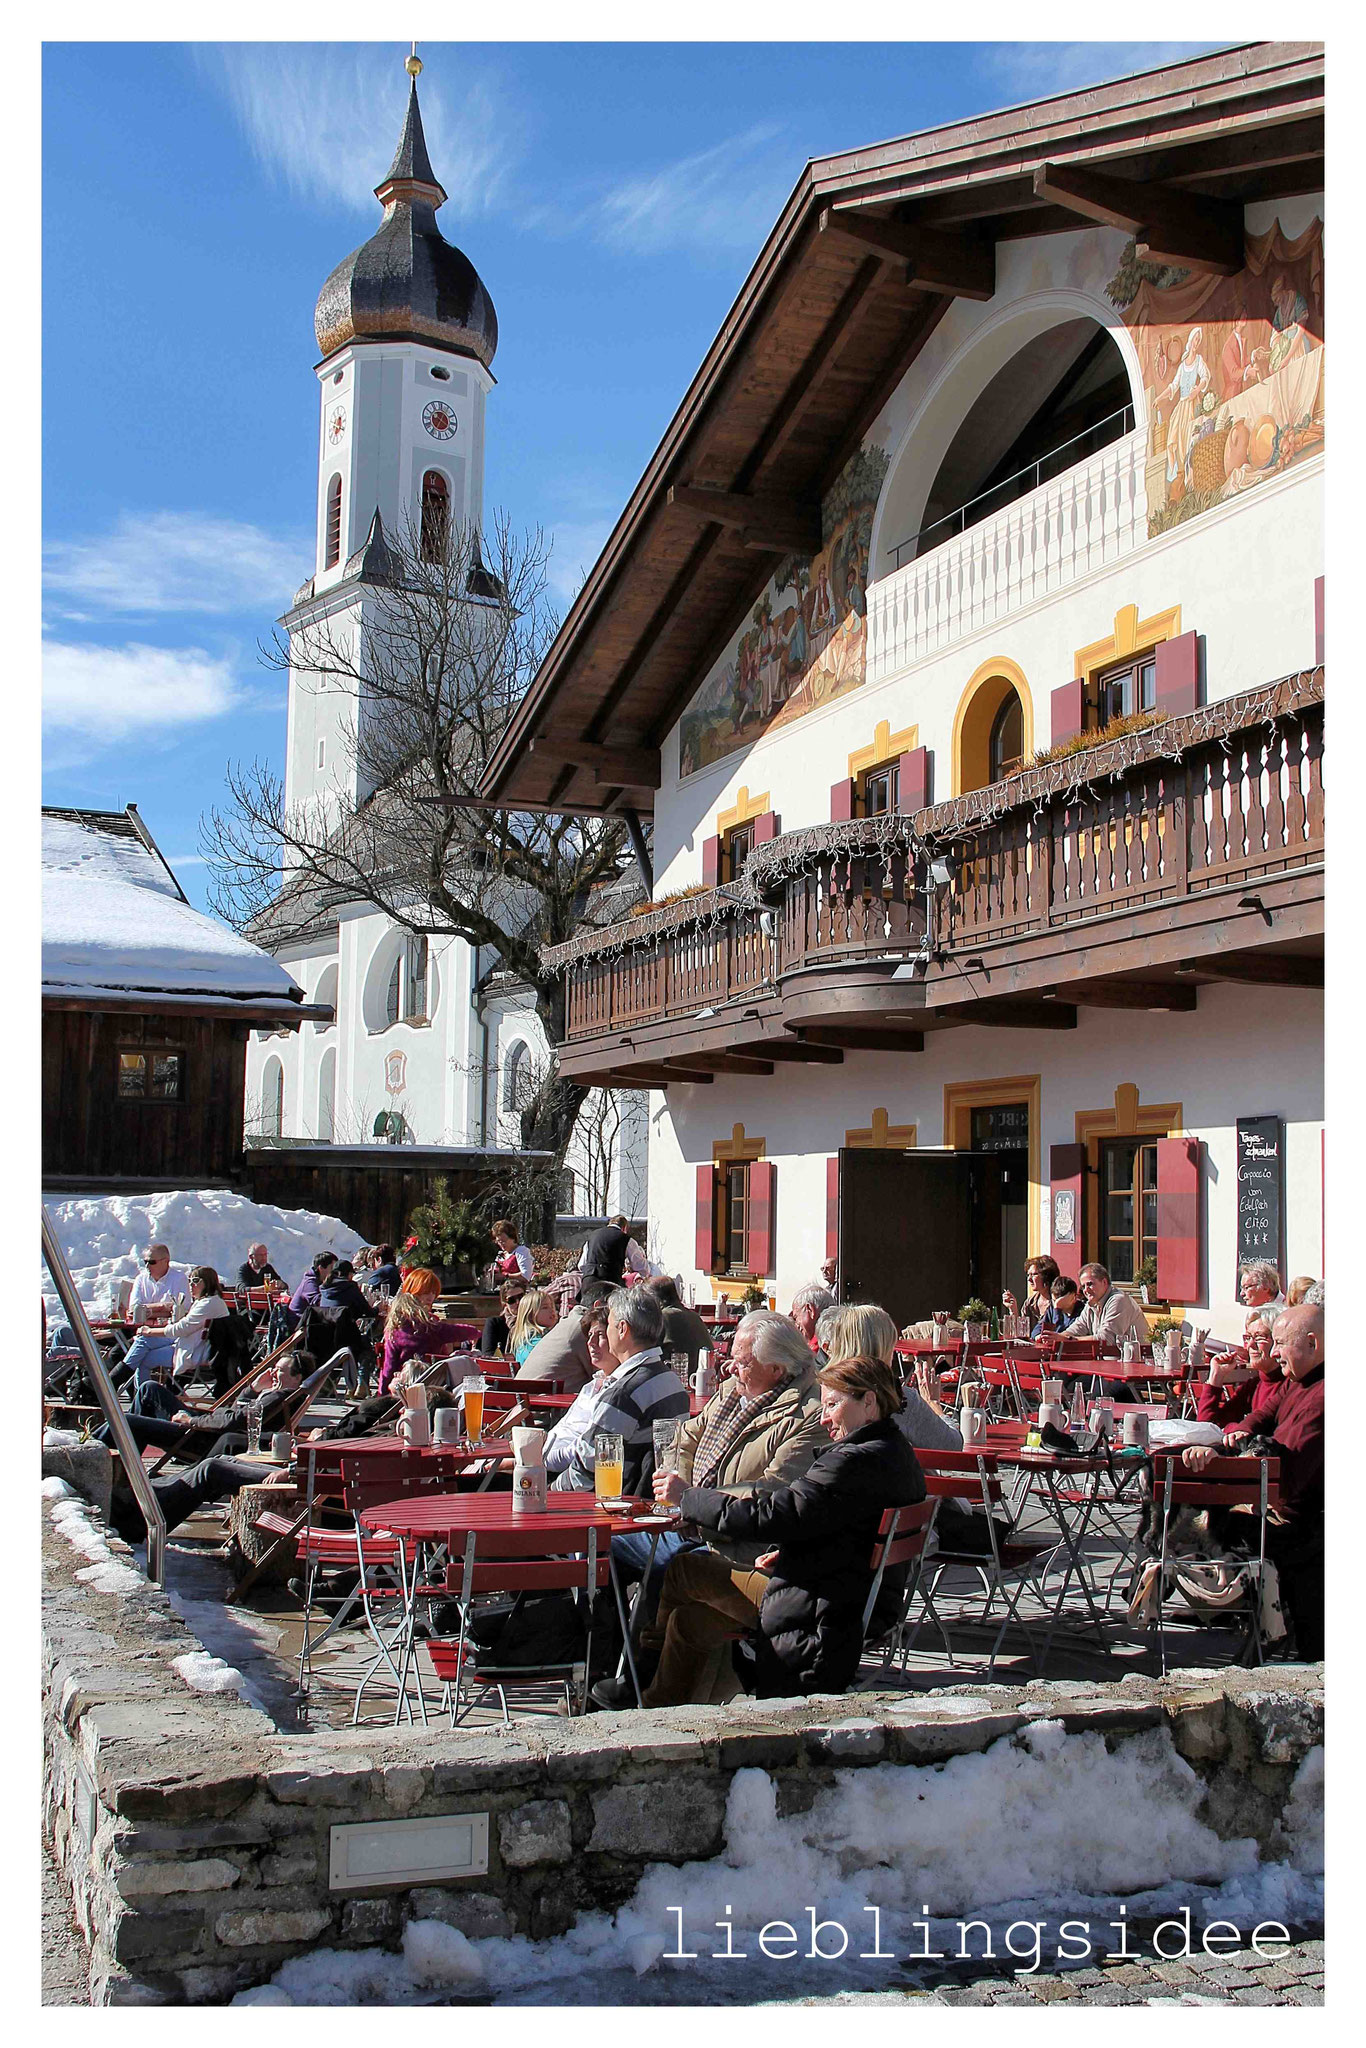 Lieblingsidee - Ausflugstipps für Garmisch